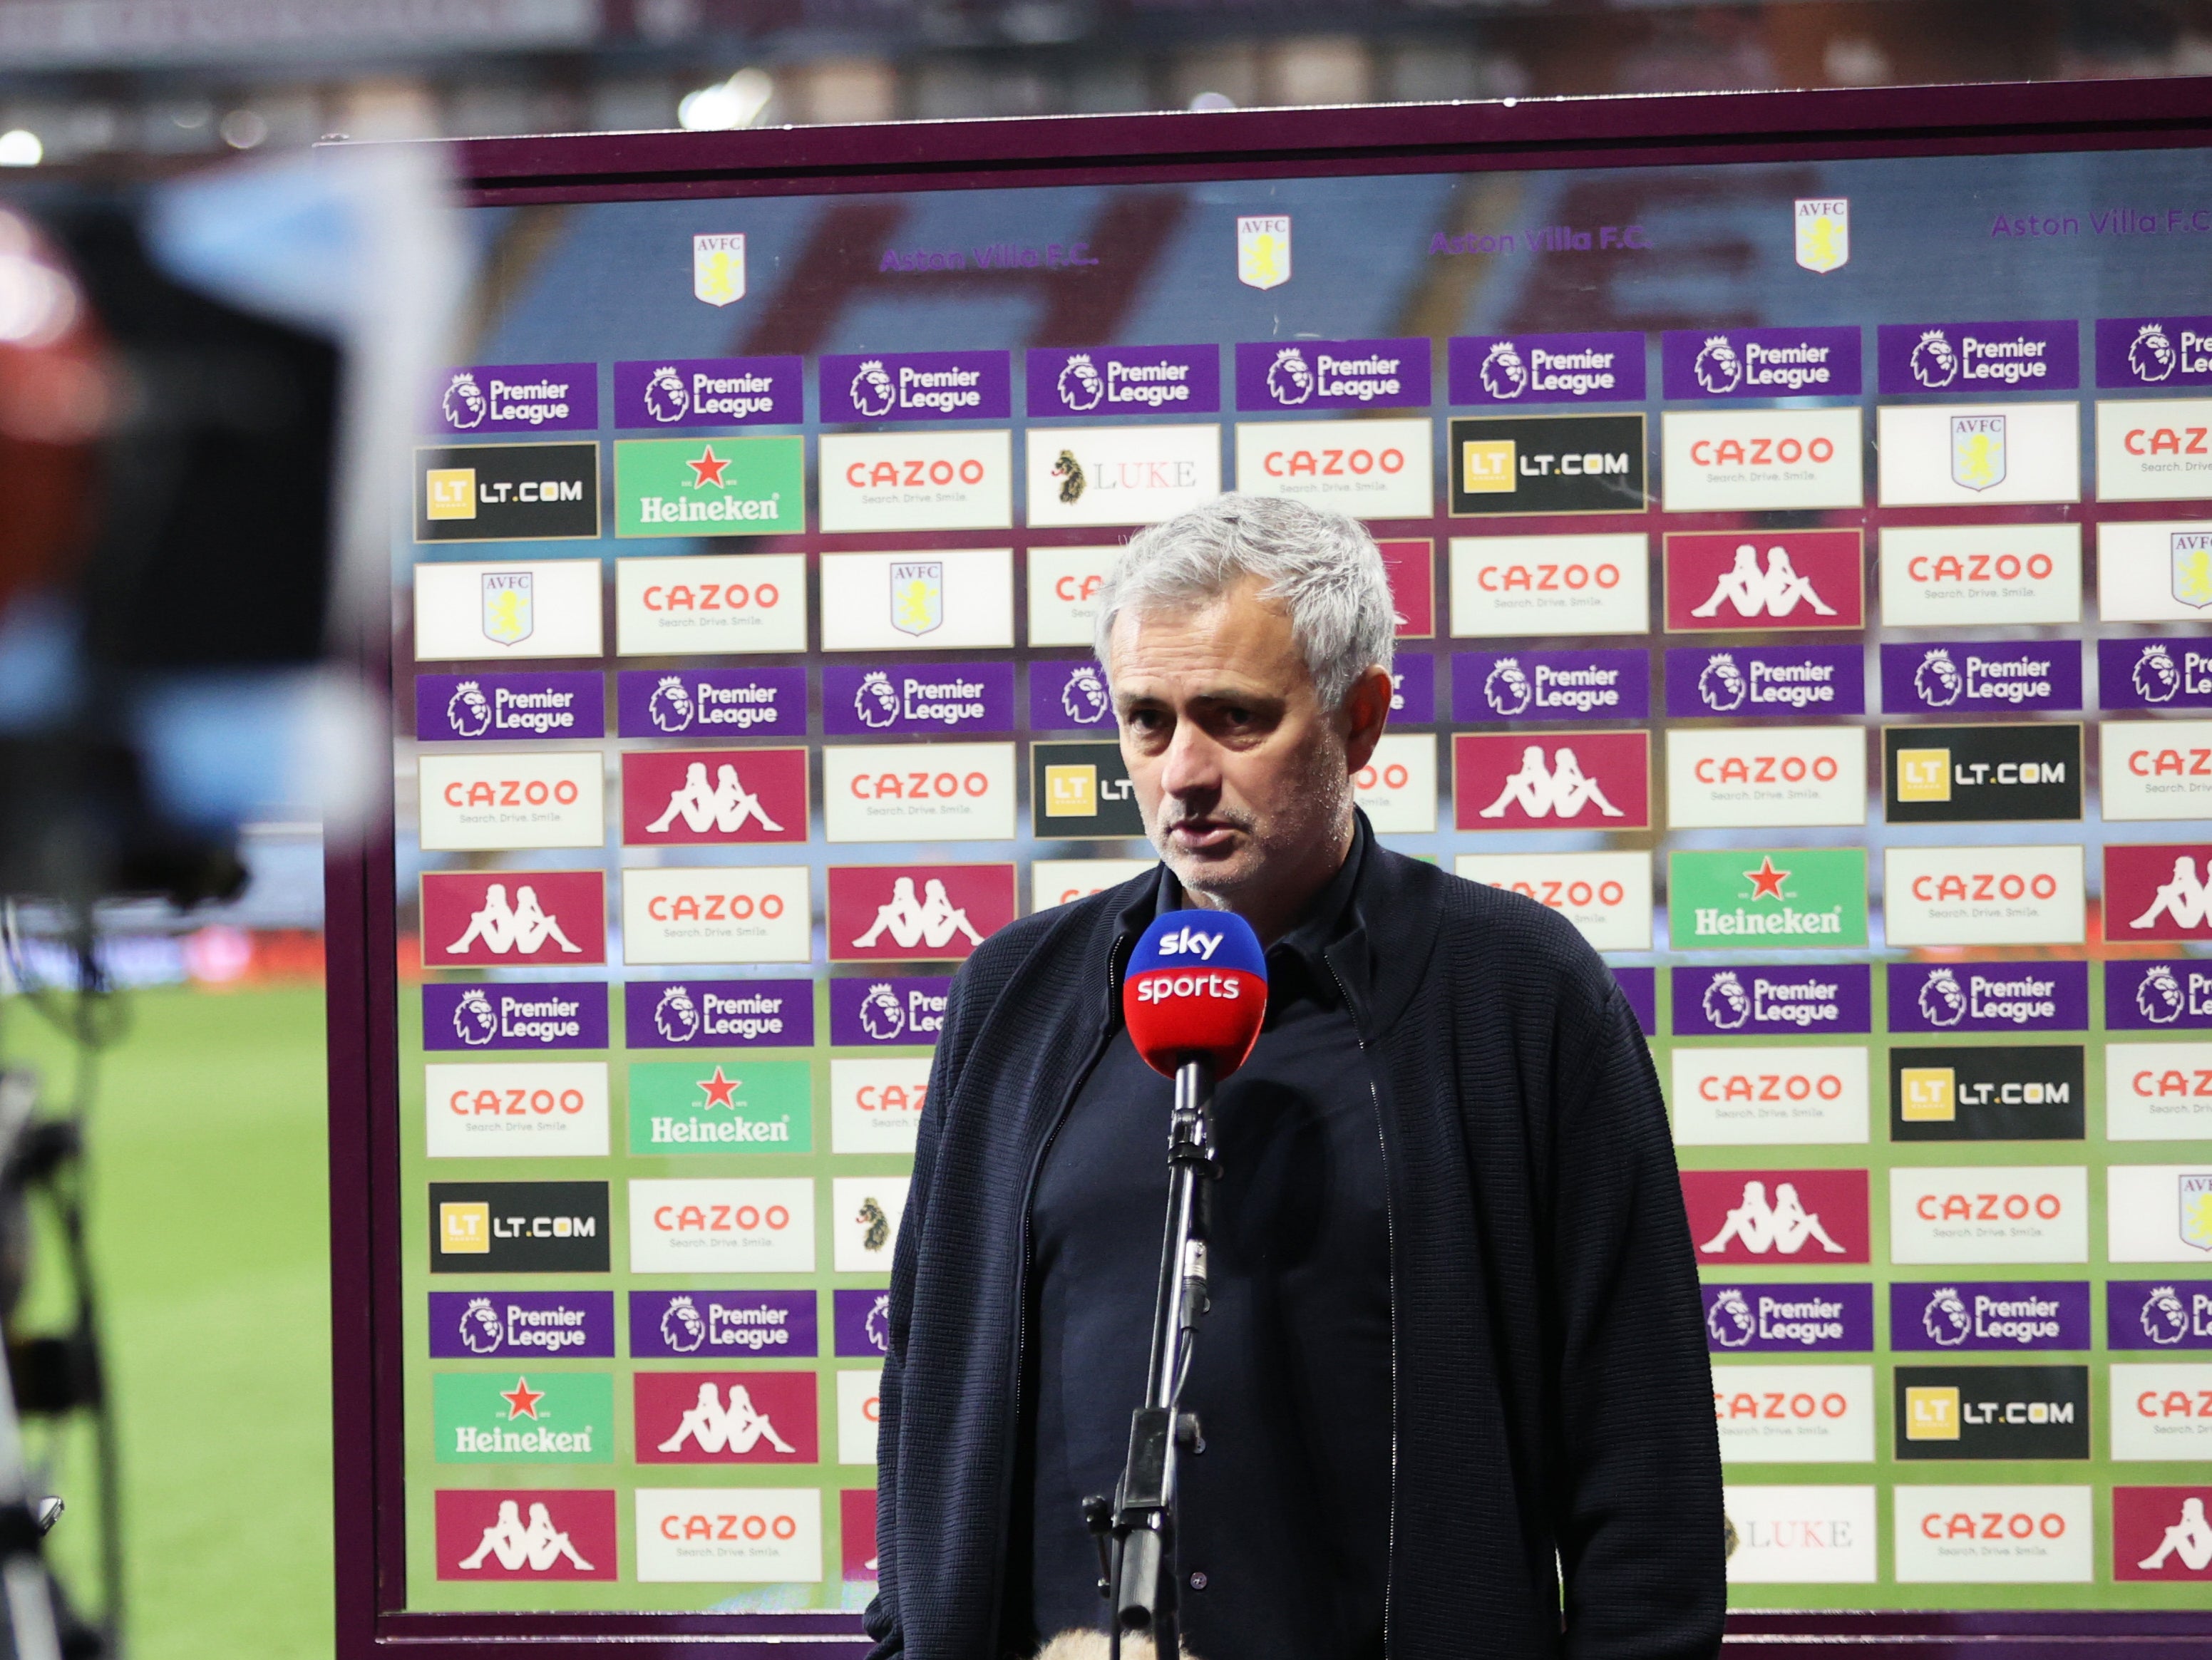 Tottenham coach Jose Mourinho